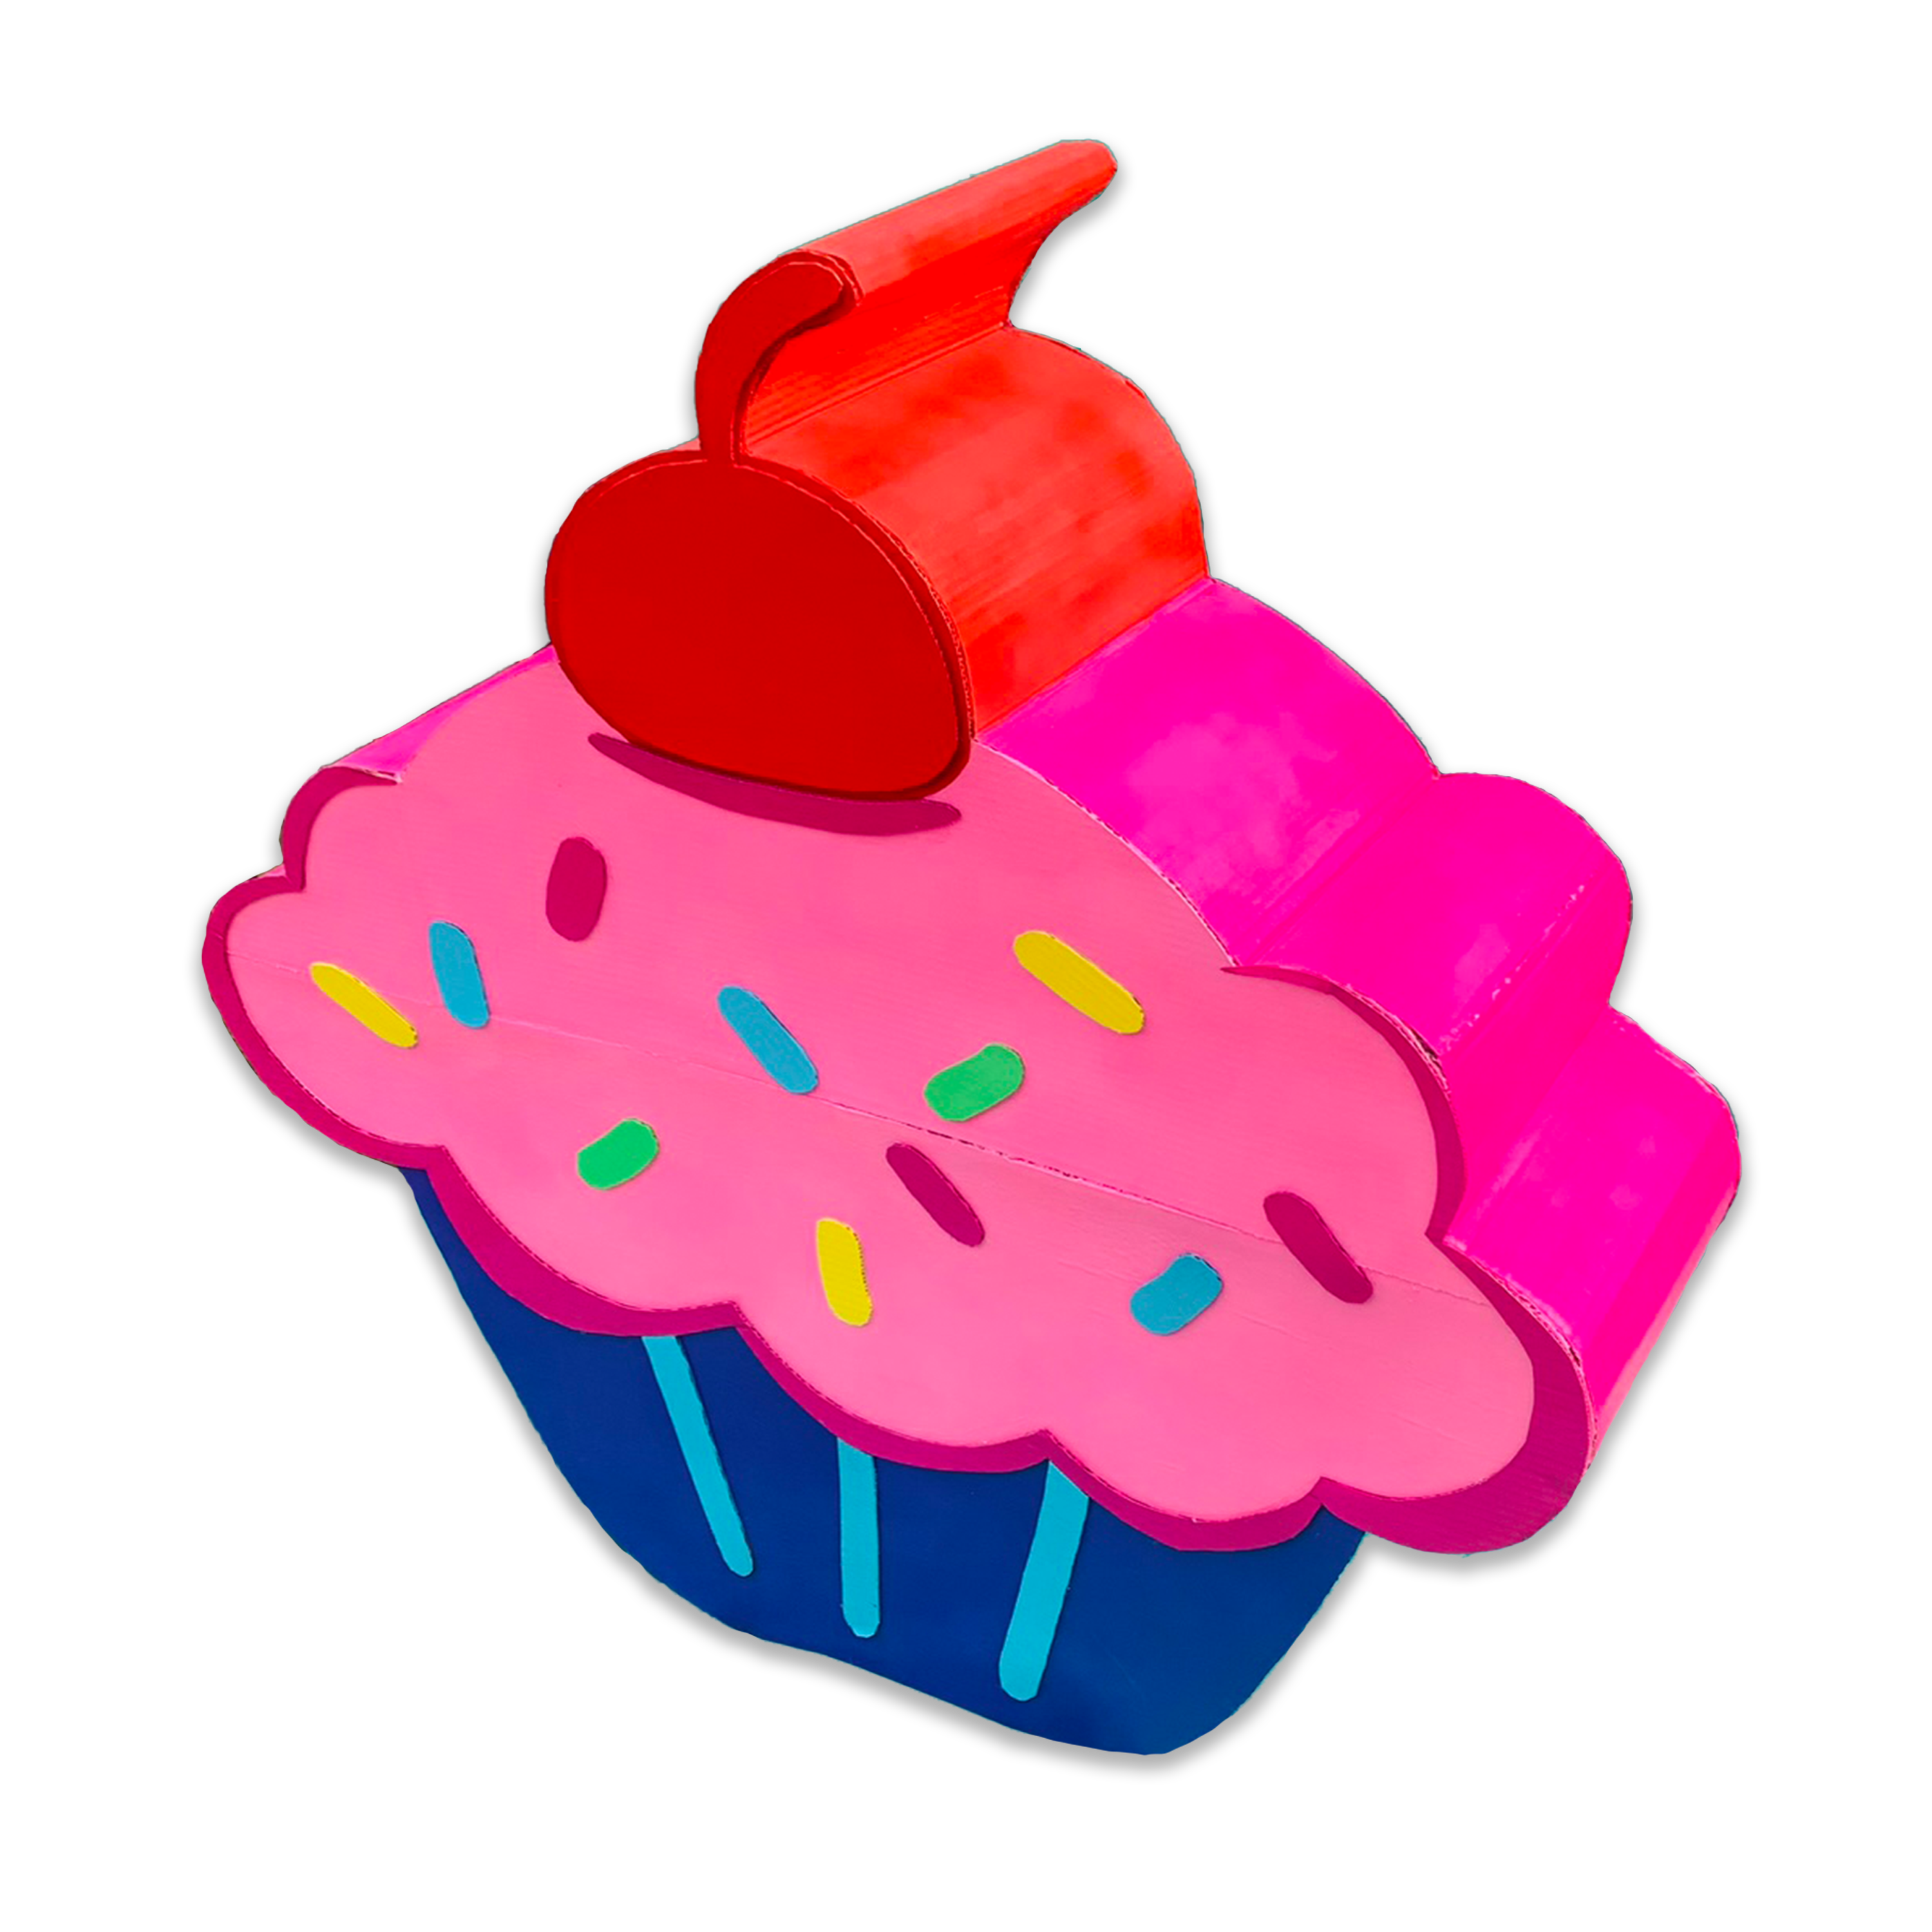 Cupcake 3D Party Prop (RENTAL)